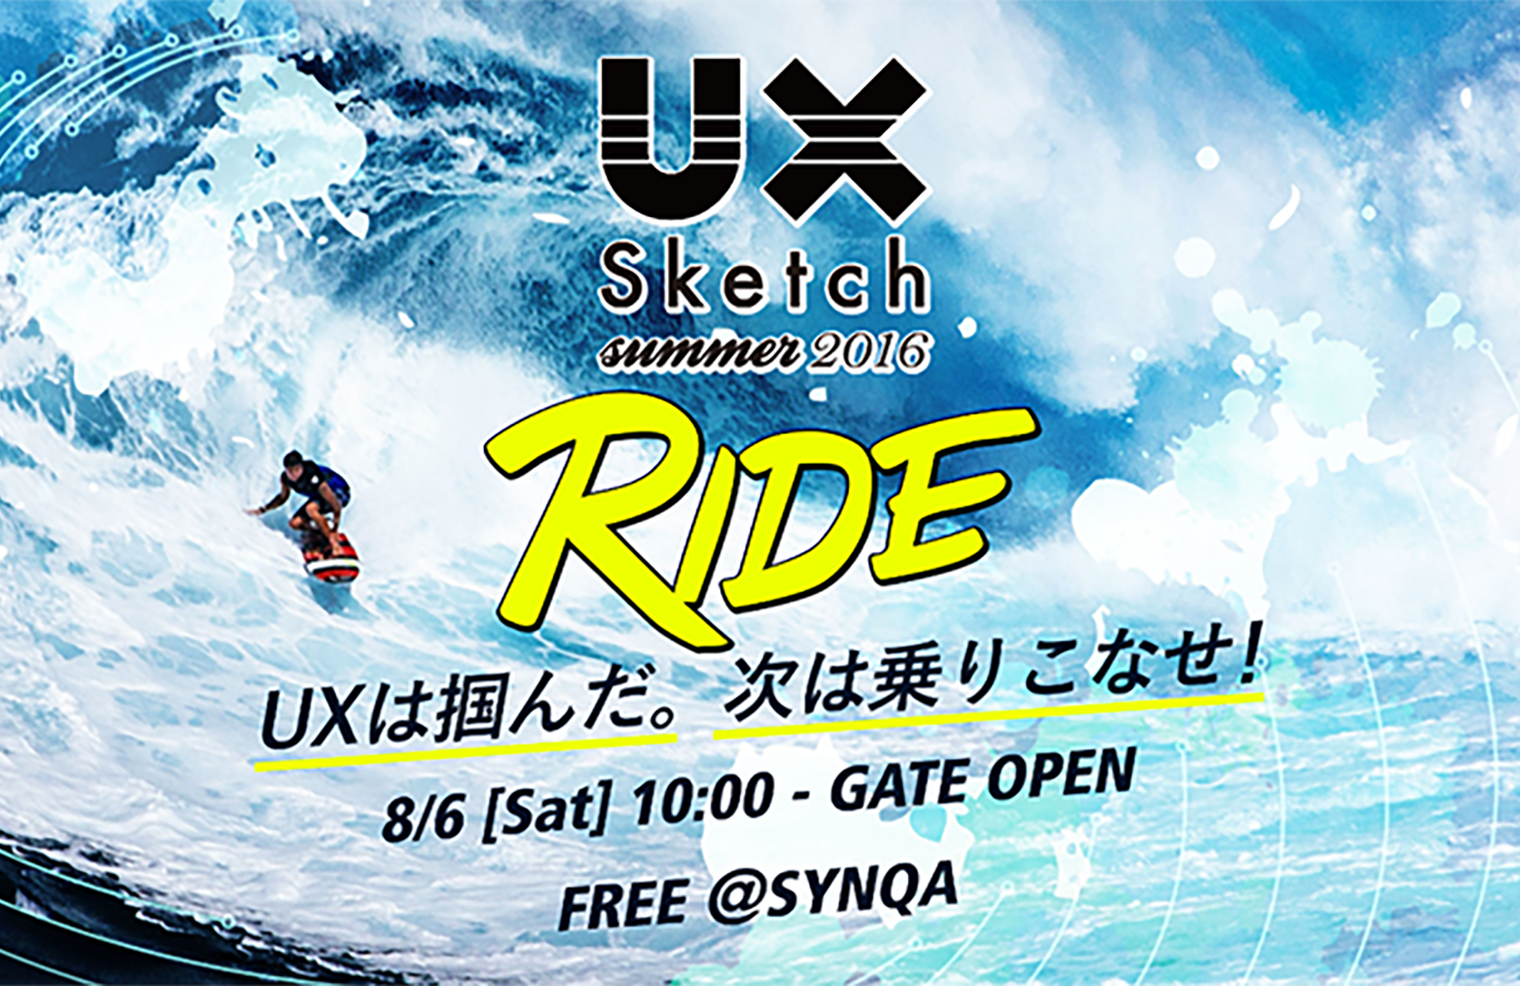 【イベントレポート】”RIDE” UX Sketch SUMMER 2016 に行ってきた